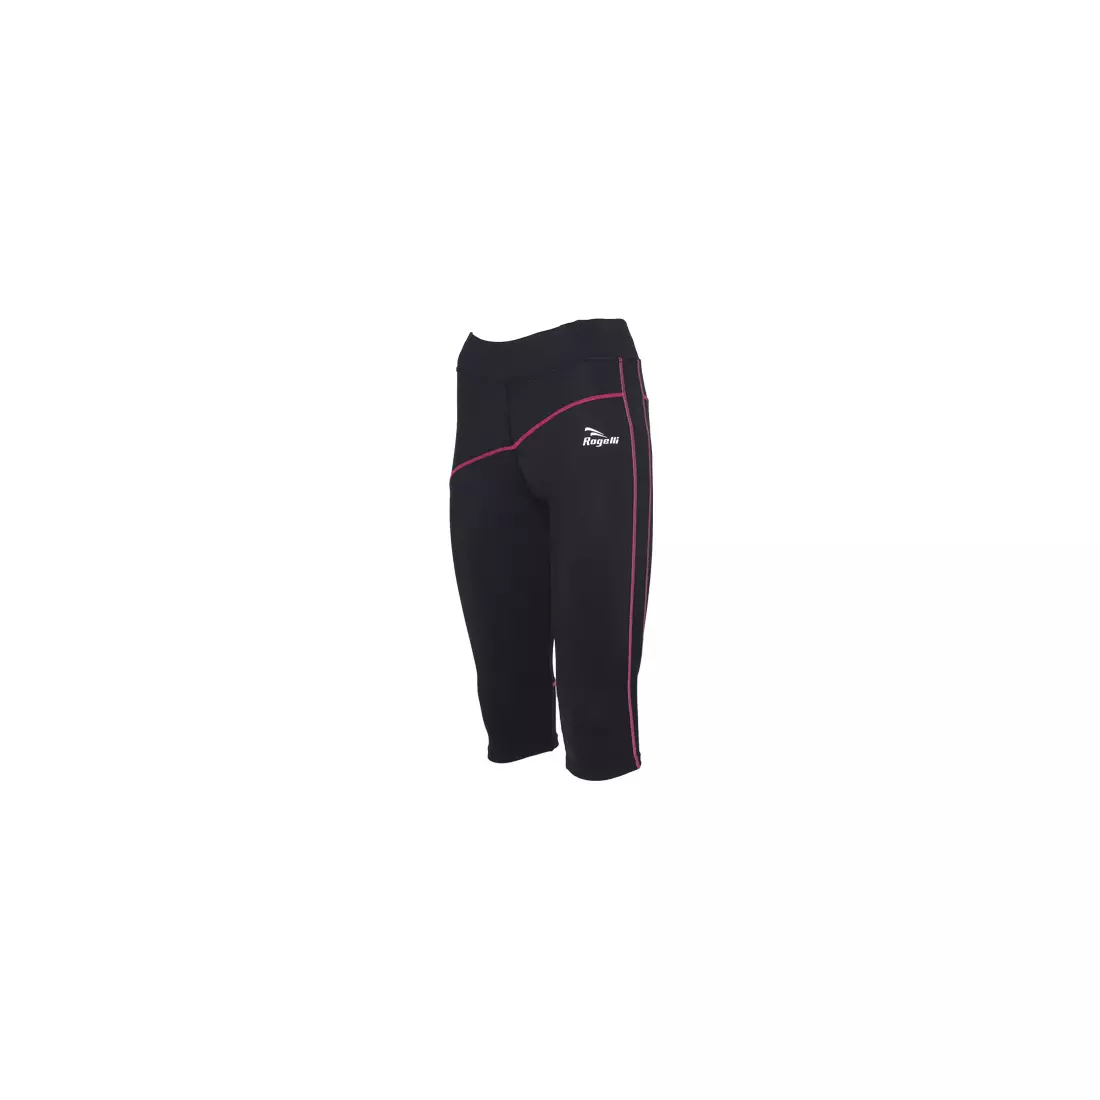 ROGELLI RUN MADILON - dámske 3/4 bežecké šortky - farba: Čierna a ružová